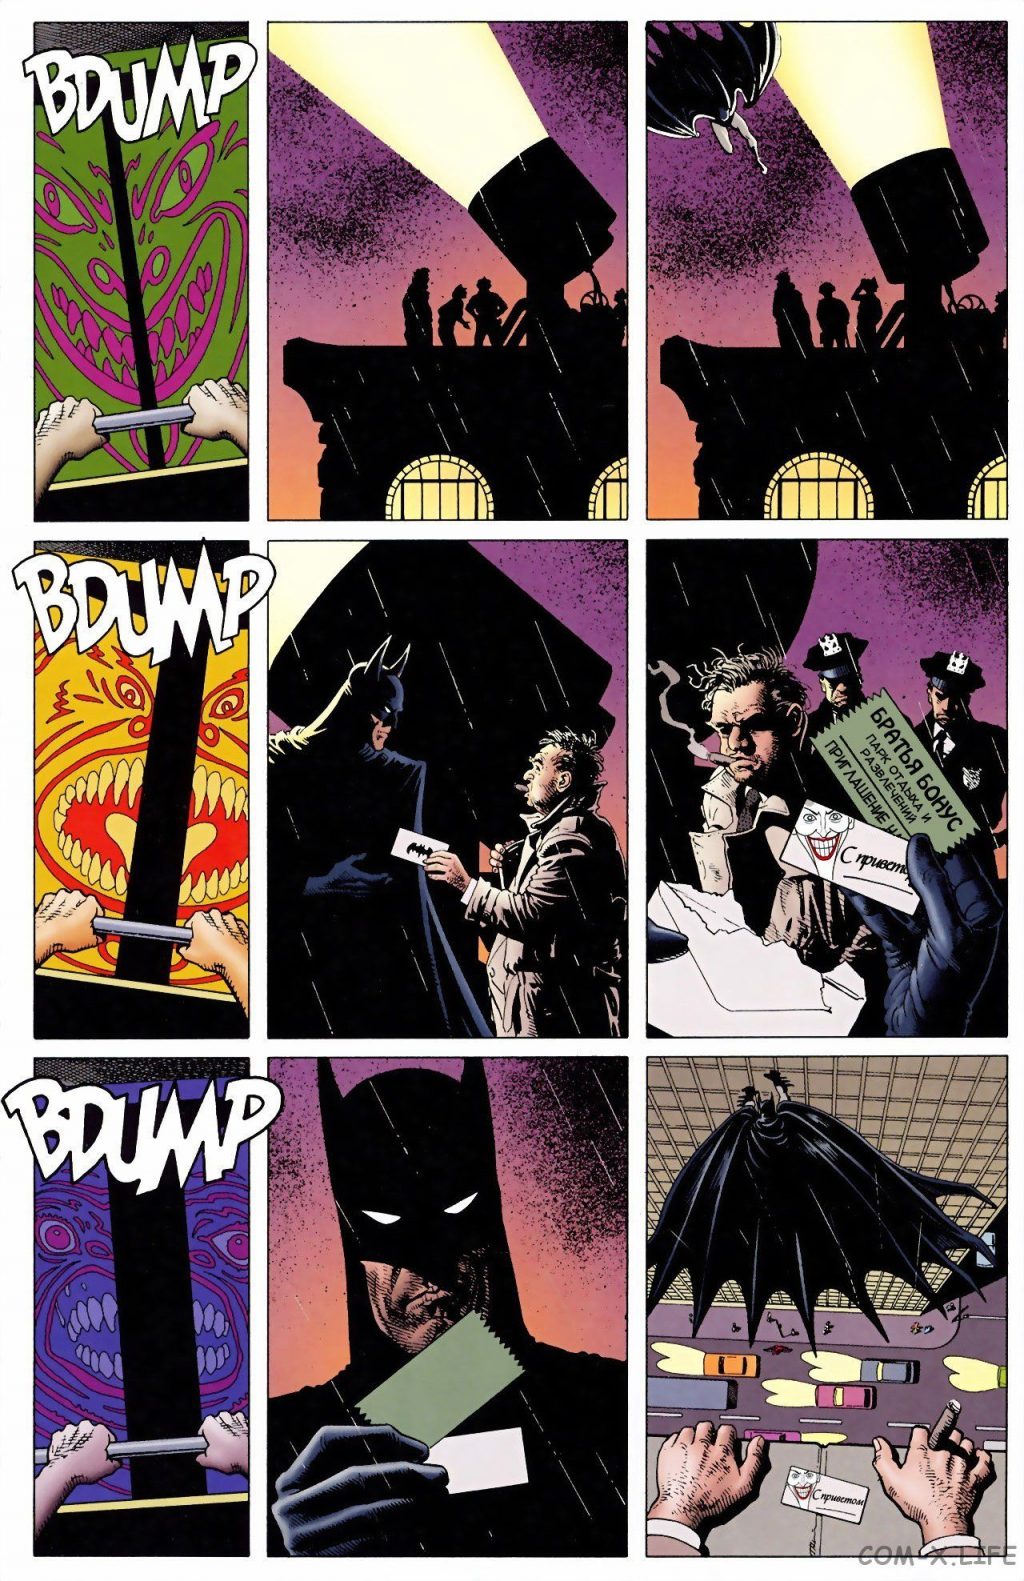 Читати онлайн комікс «Бетмен. Убвичій жарт» російською мовою безкоштовно